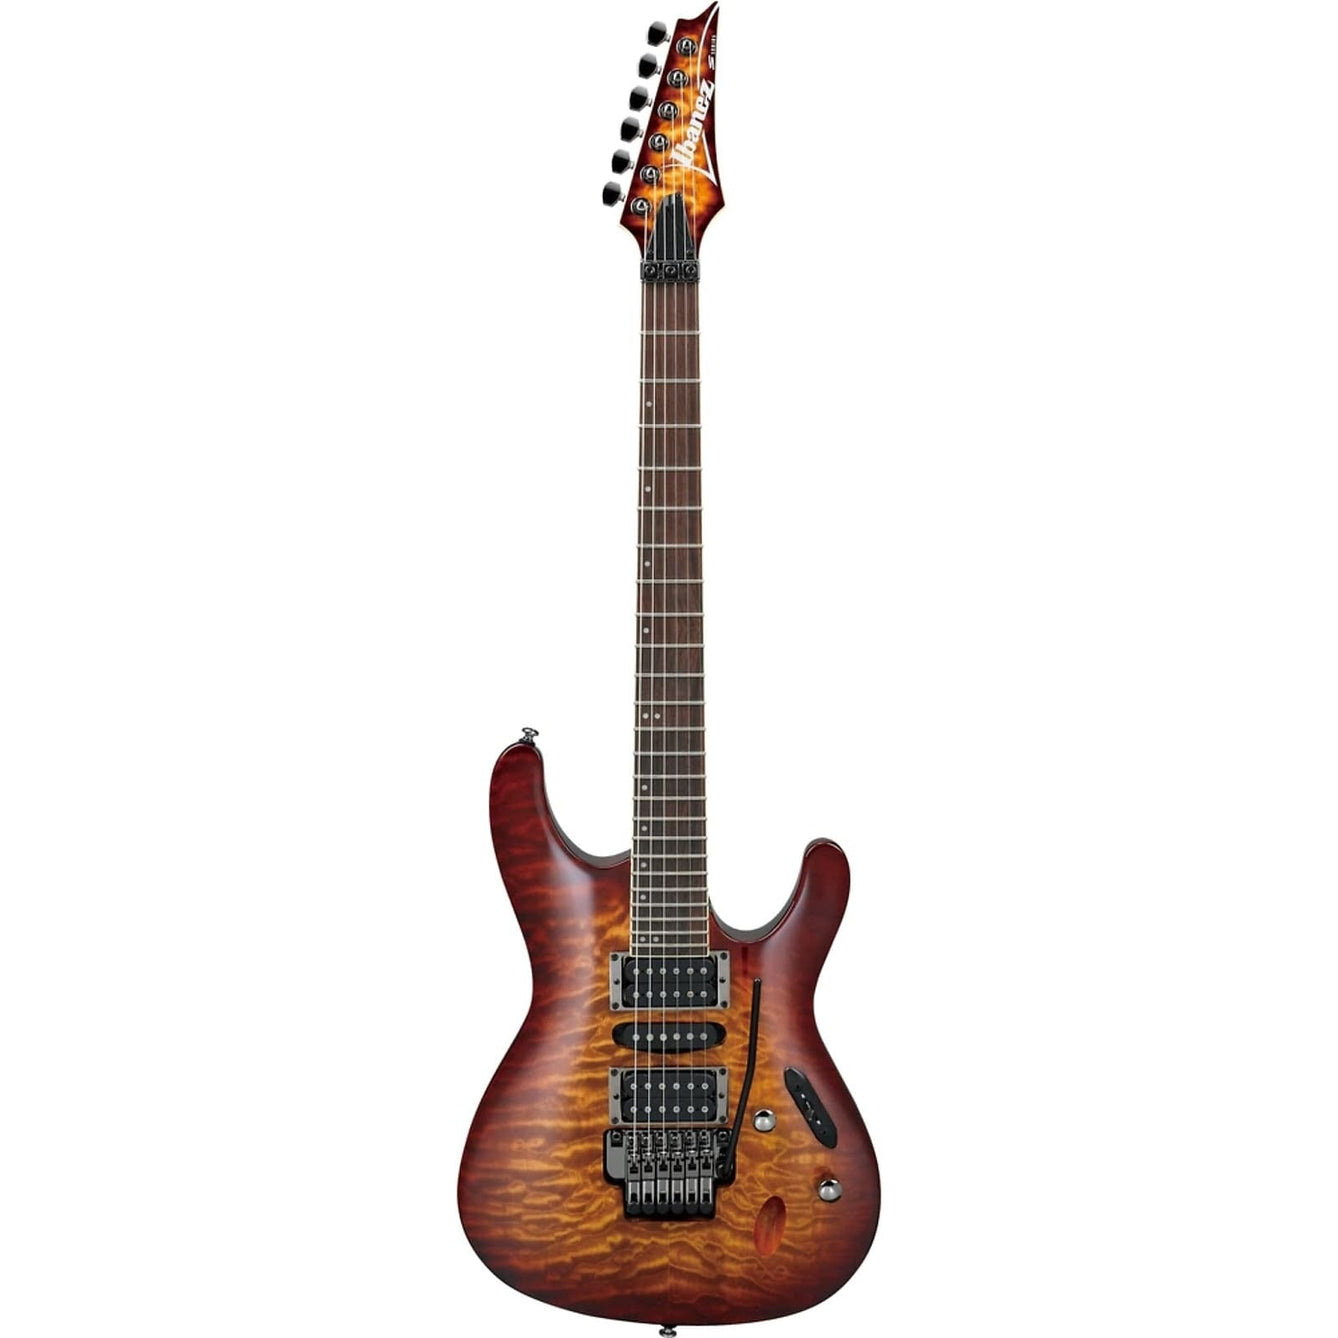 Đàn Guitar Điện Ibanez Standard S670QM-Mai Nguyên Music